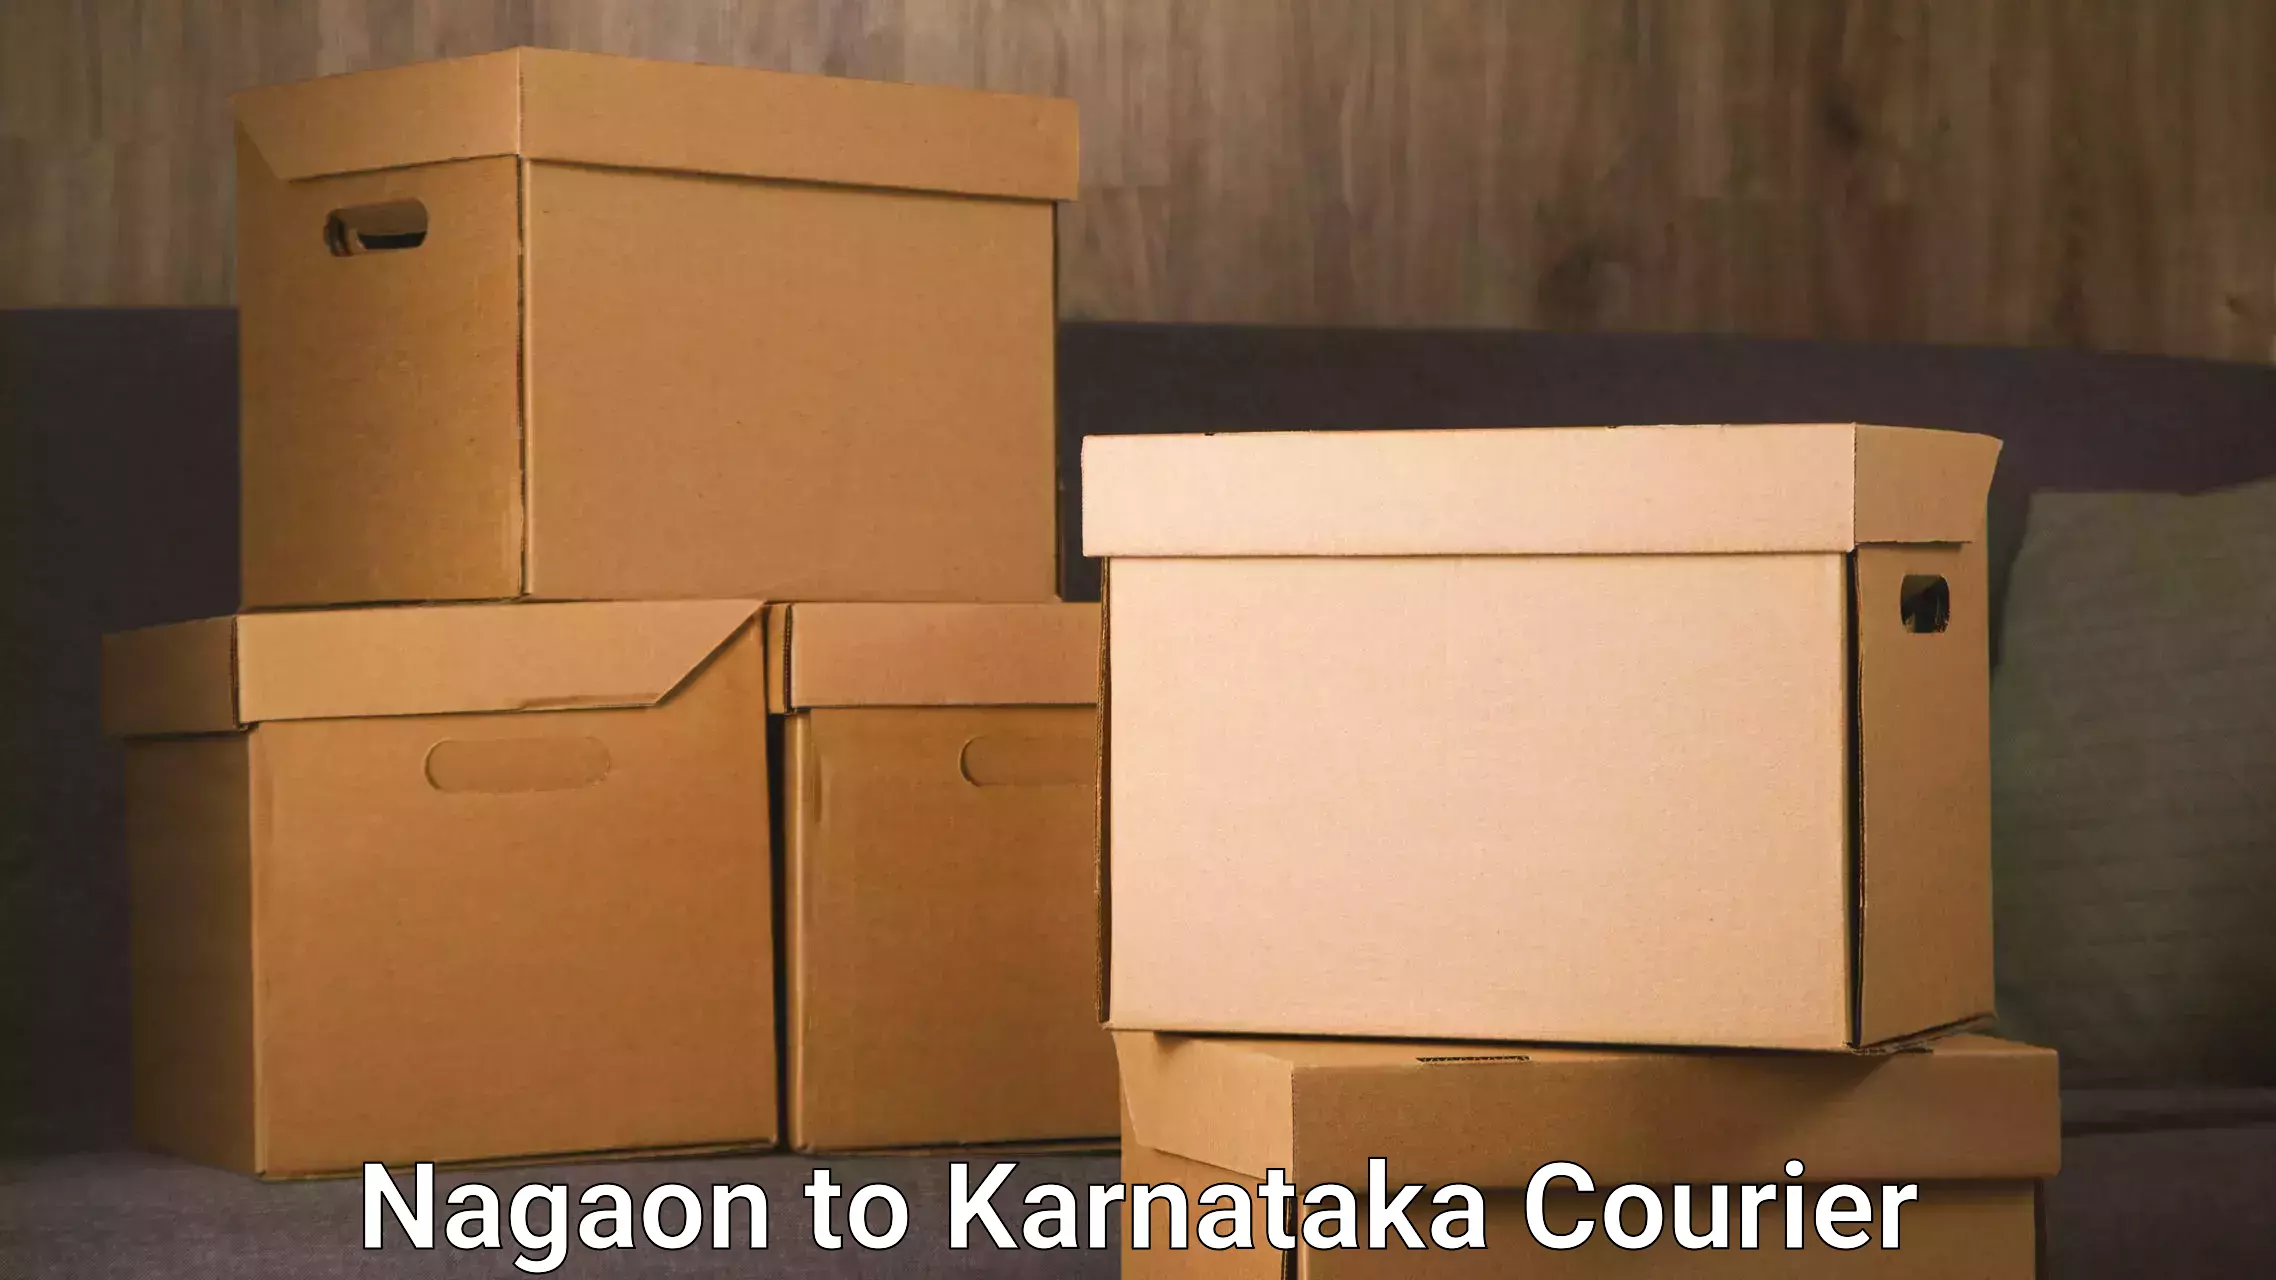 Quick booking process in Nagaon to Karnataka